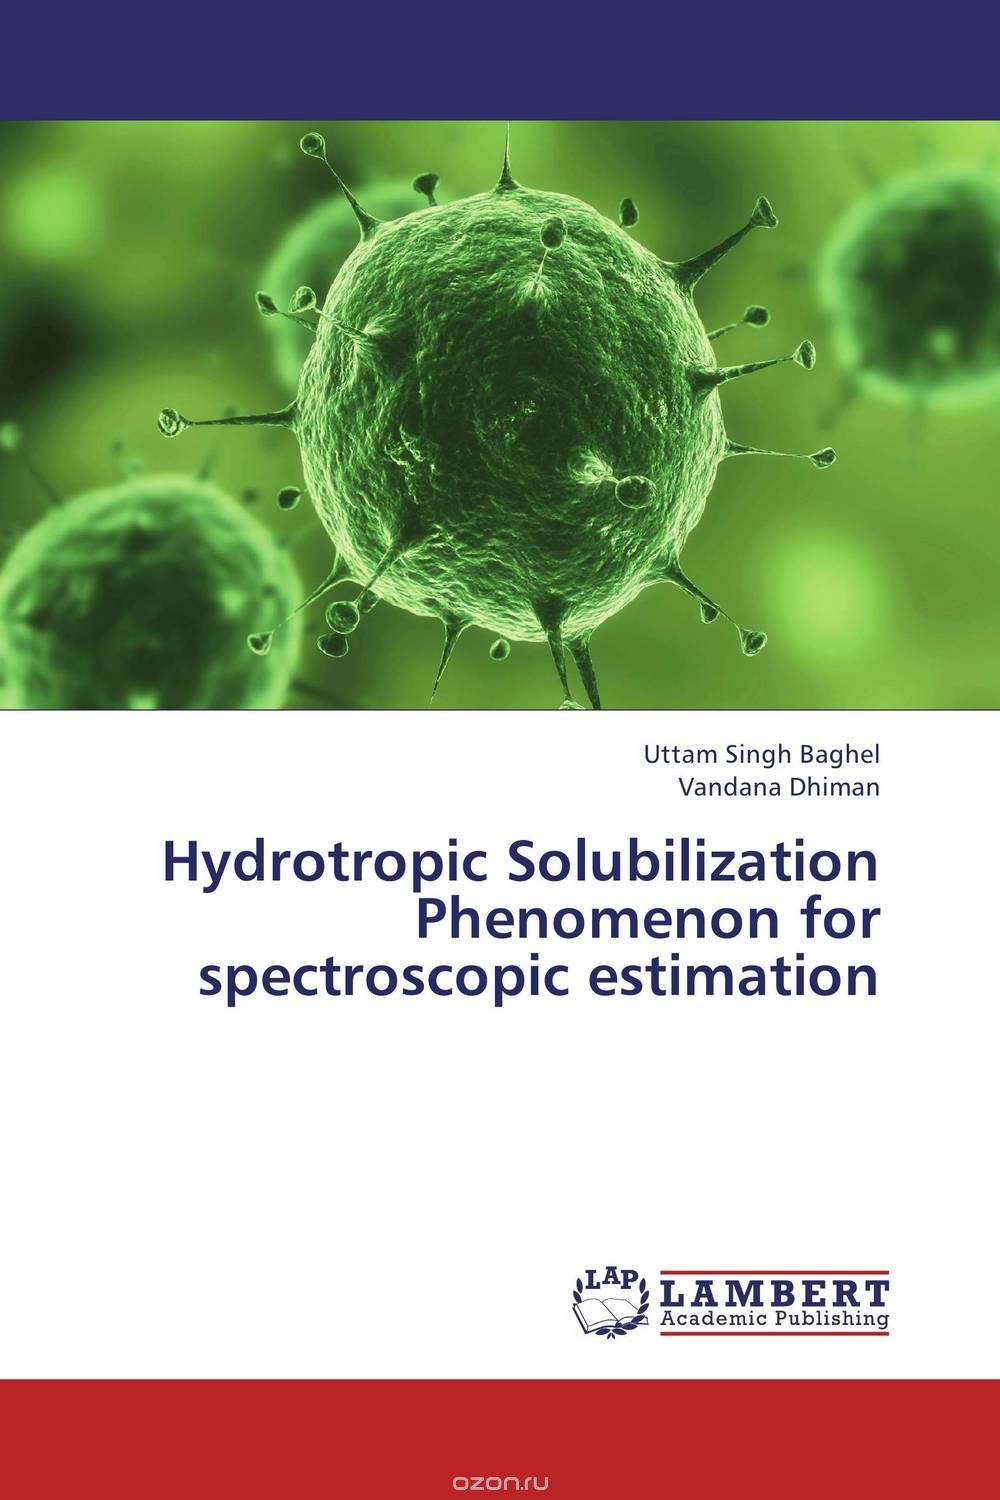 Hydrotropic Solubilization Phenomenon for spectroscopic estimation